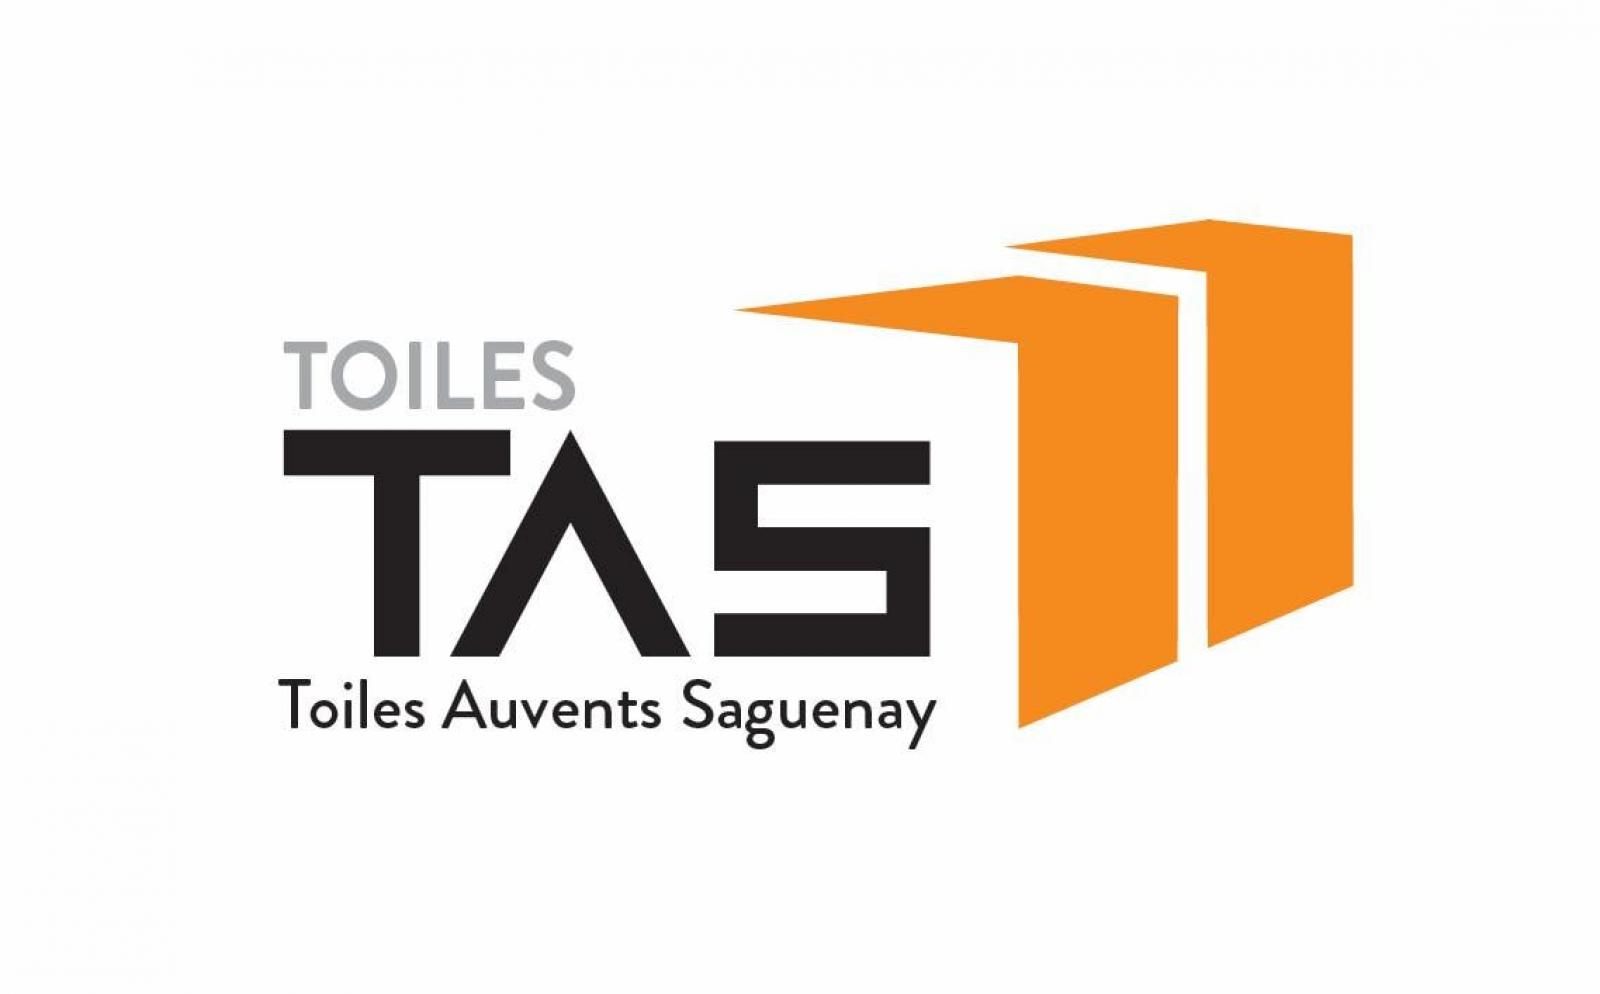 Toiles TAS Fournisseur d'auvents abris de toiles Saguenay, Québec Logo